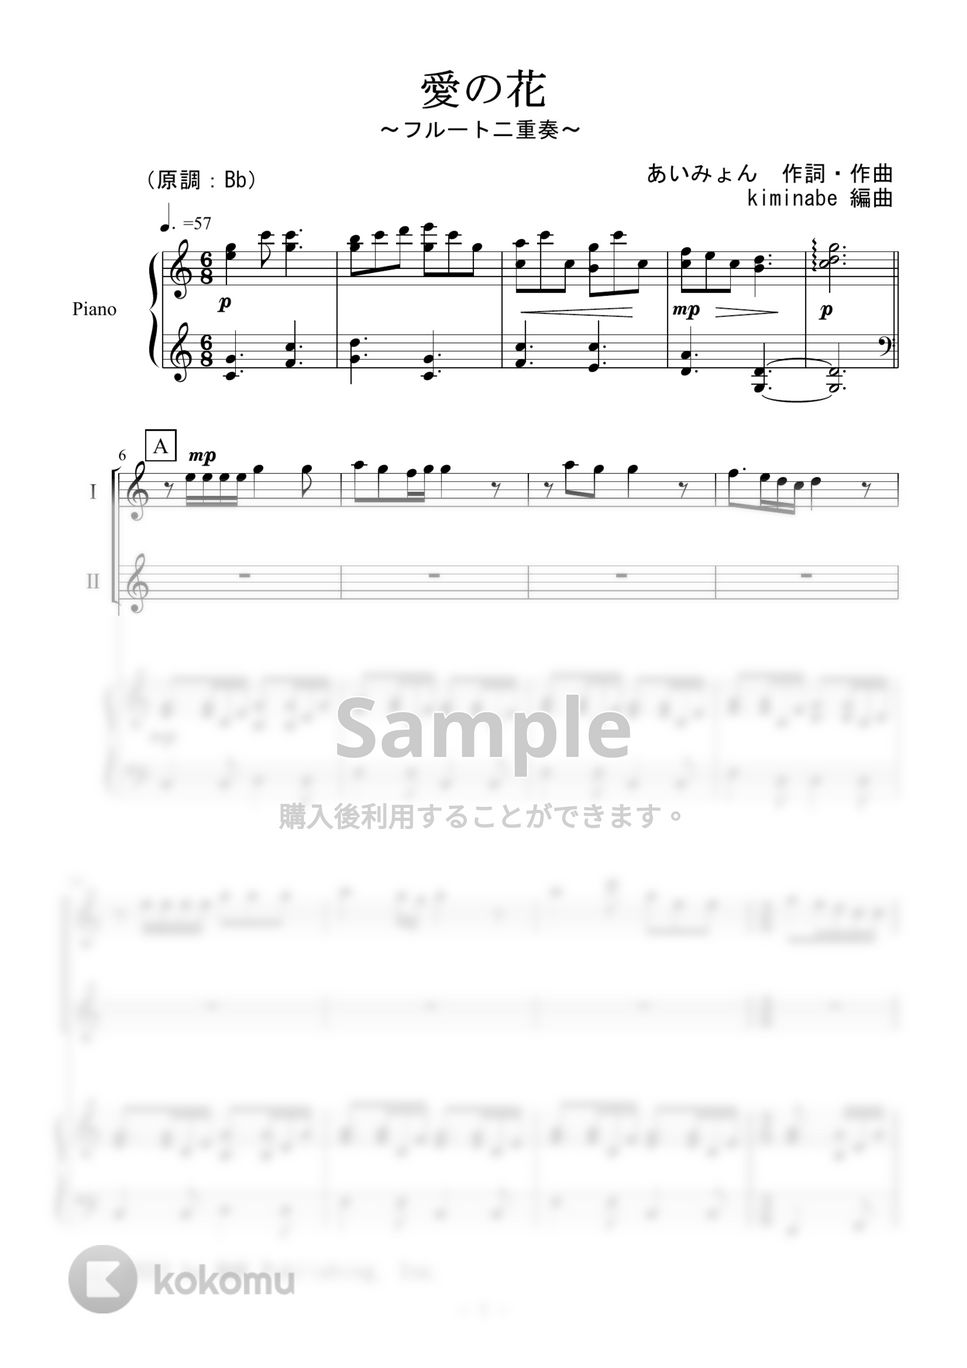 あいみょん - 愛の花 (フルート二重奏) by kiminabe